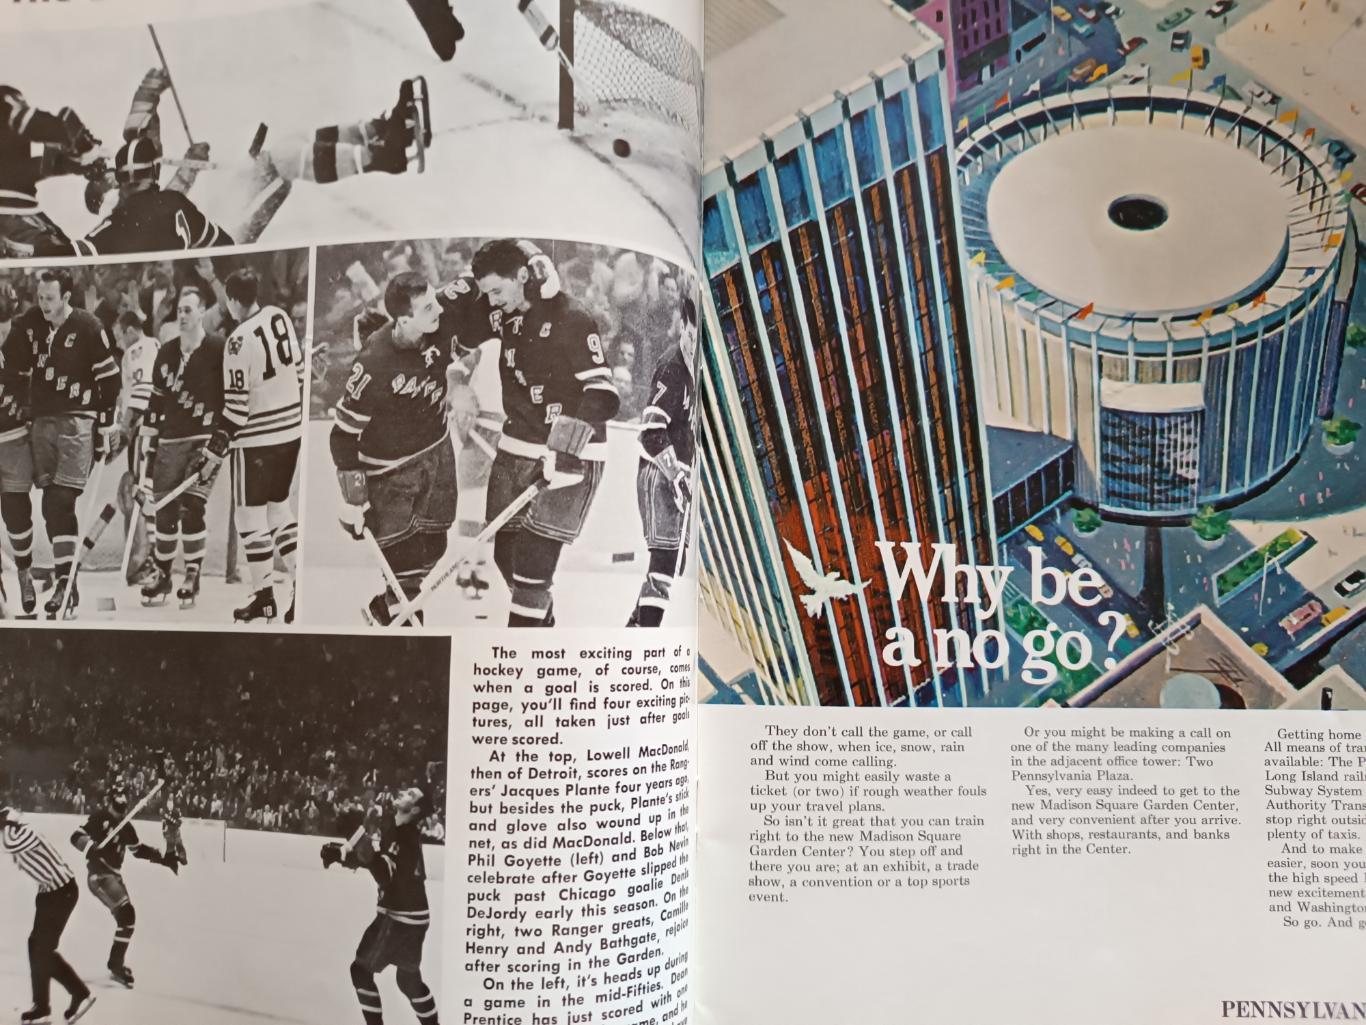 ПРОГРАММА МАТЧА НХЛ РЭЙНДЖЕРС КИНГЗ 1968 MAR.10 RANGERS VS. LA KINGS PROGRAM 3